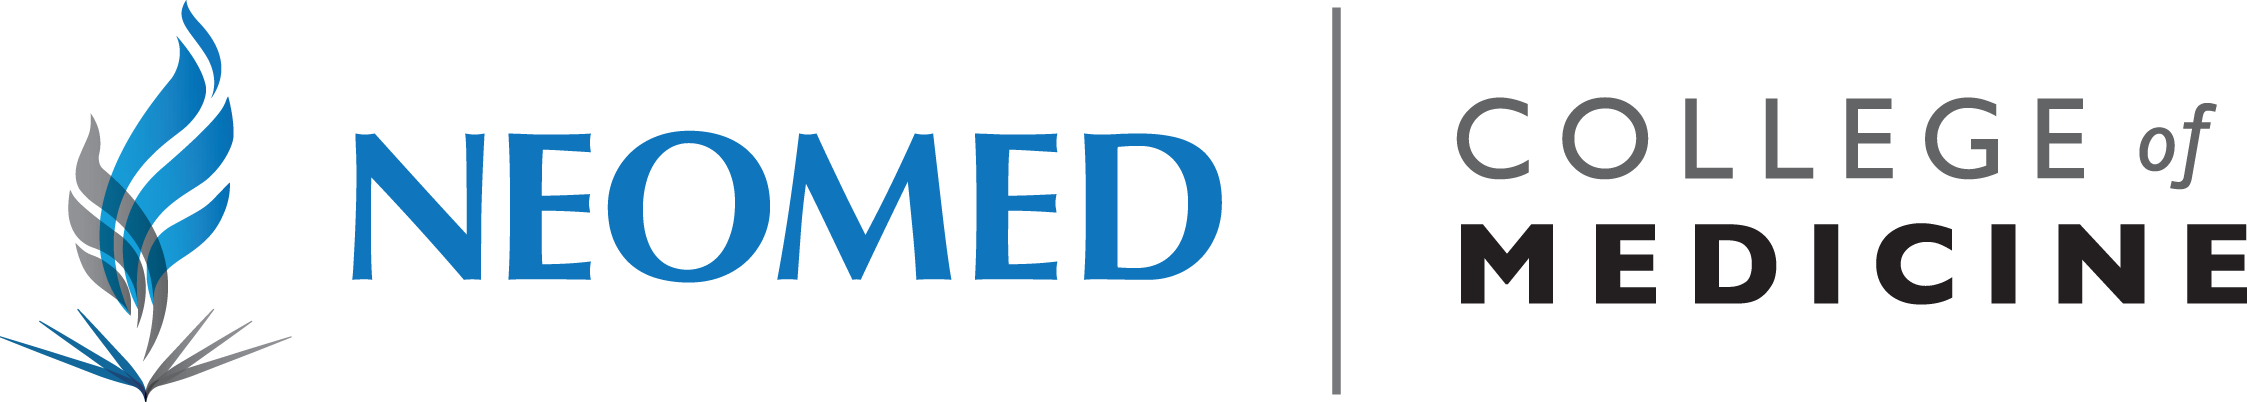 NEOMED College of Medicine logo